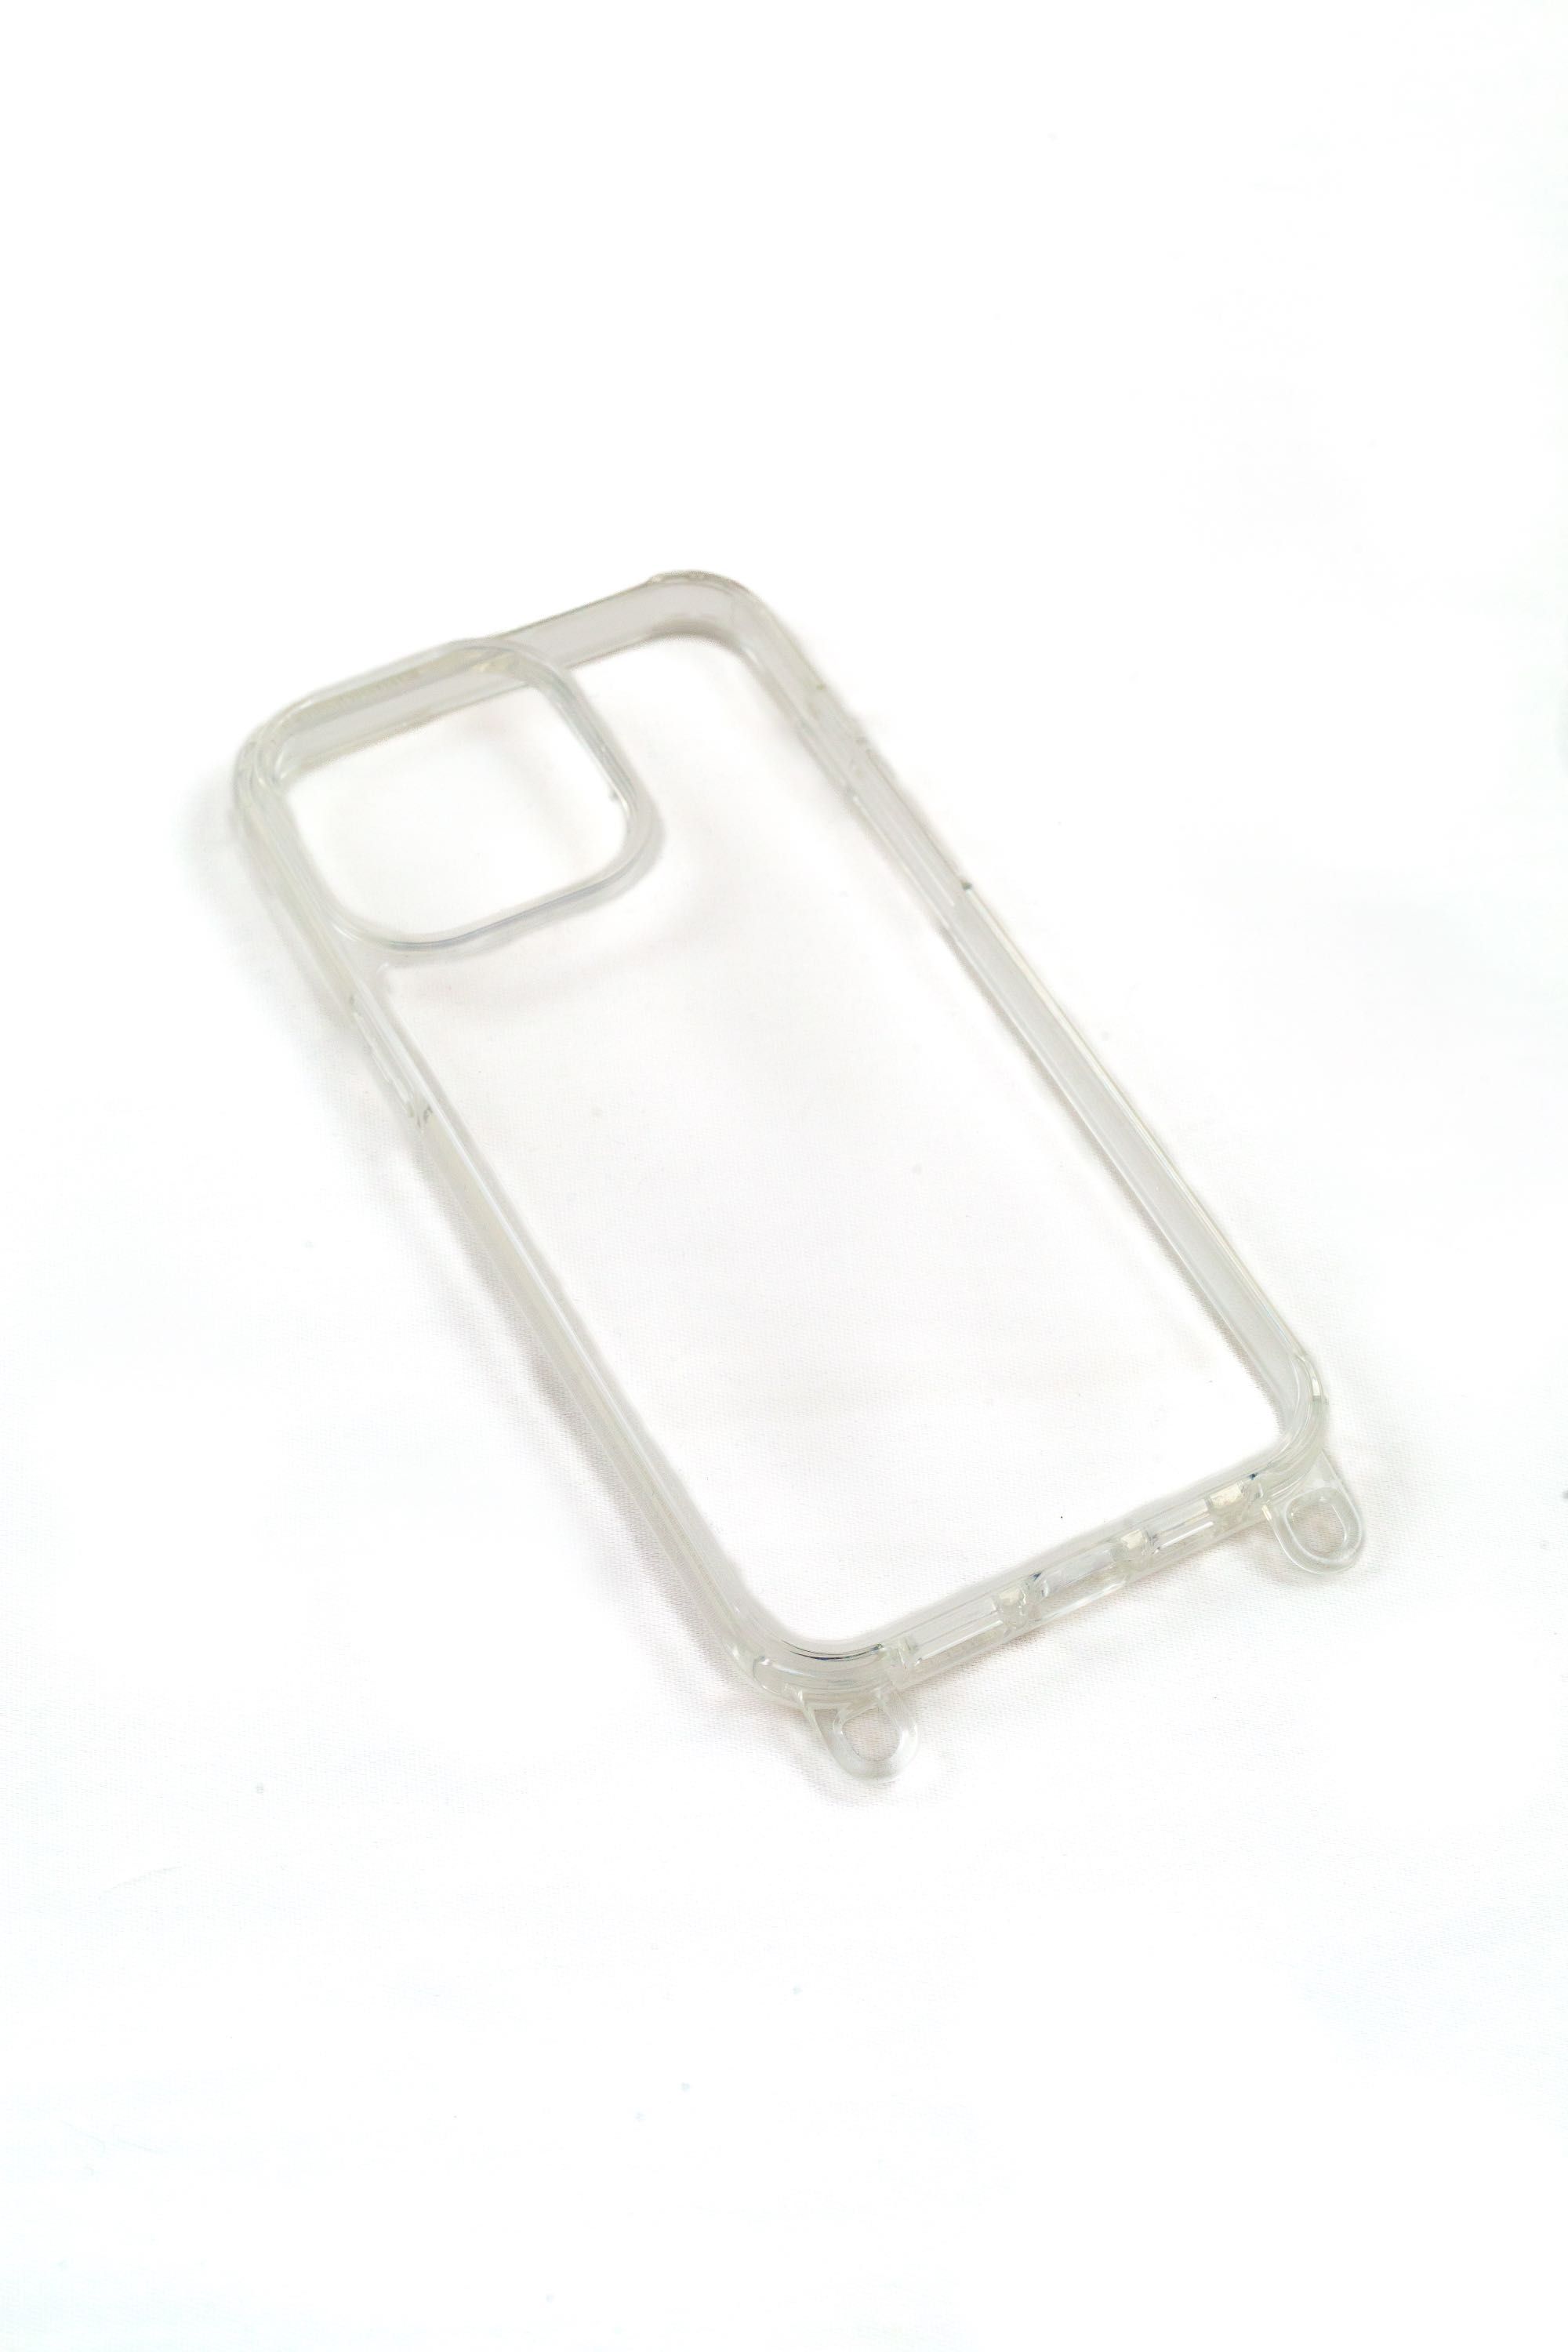 Husa iPhone transparenta cu prindere accesorii detasabila